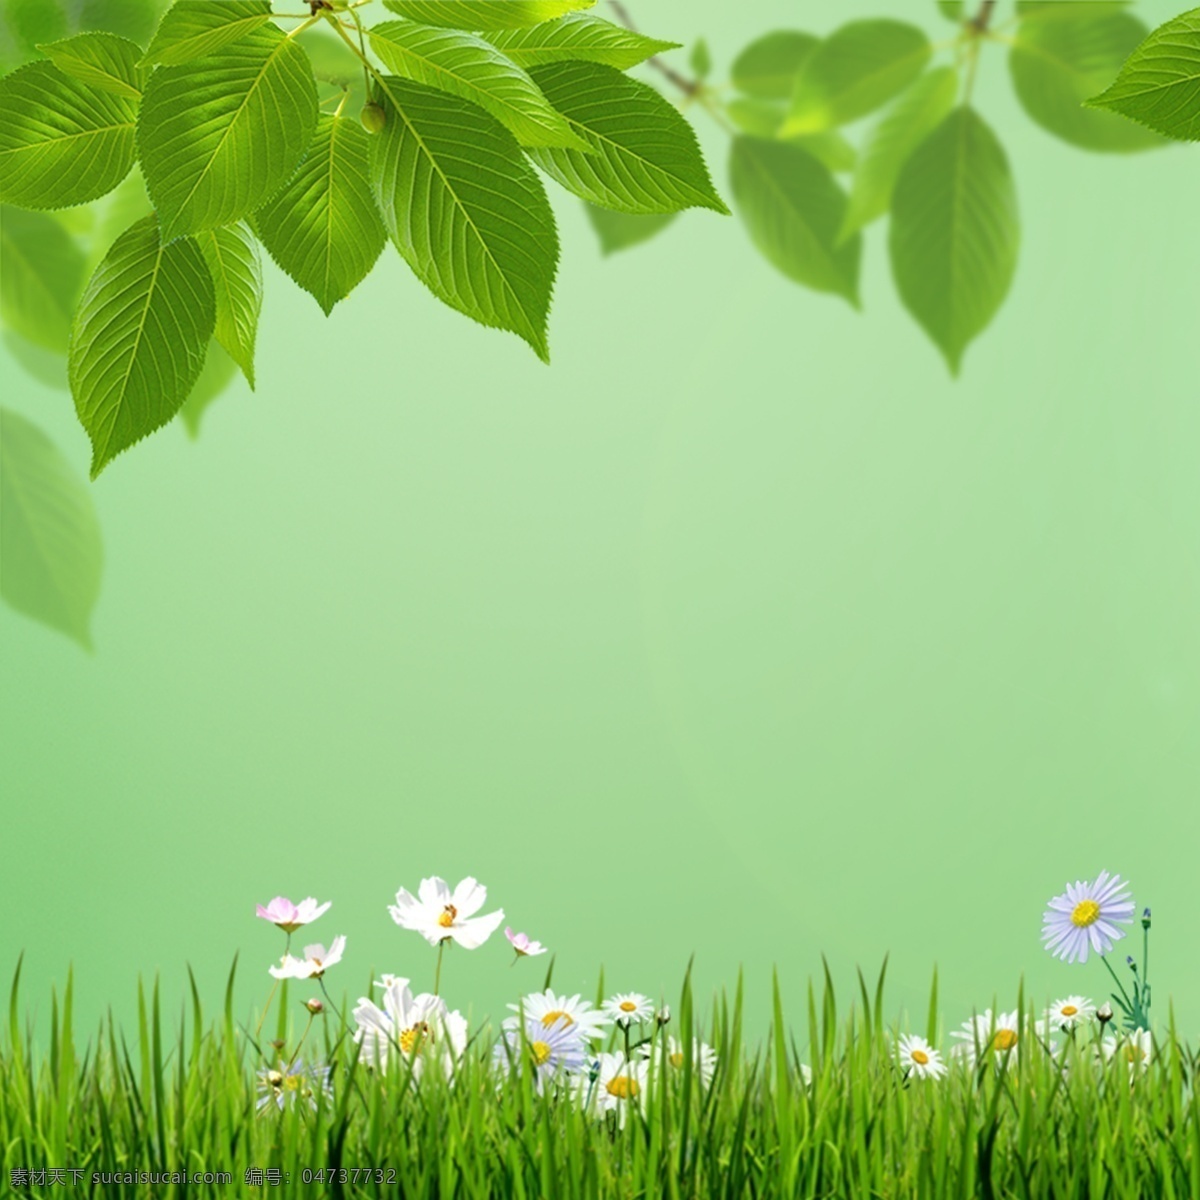 花朵 青草 树叶 绿色 背景 白色花朵 野菊花 绿草 绿叶 广告背景素材 绿色背景素材